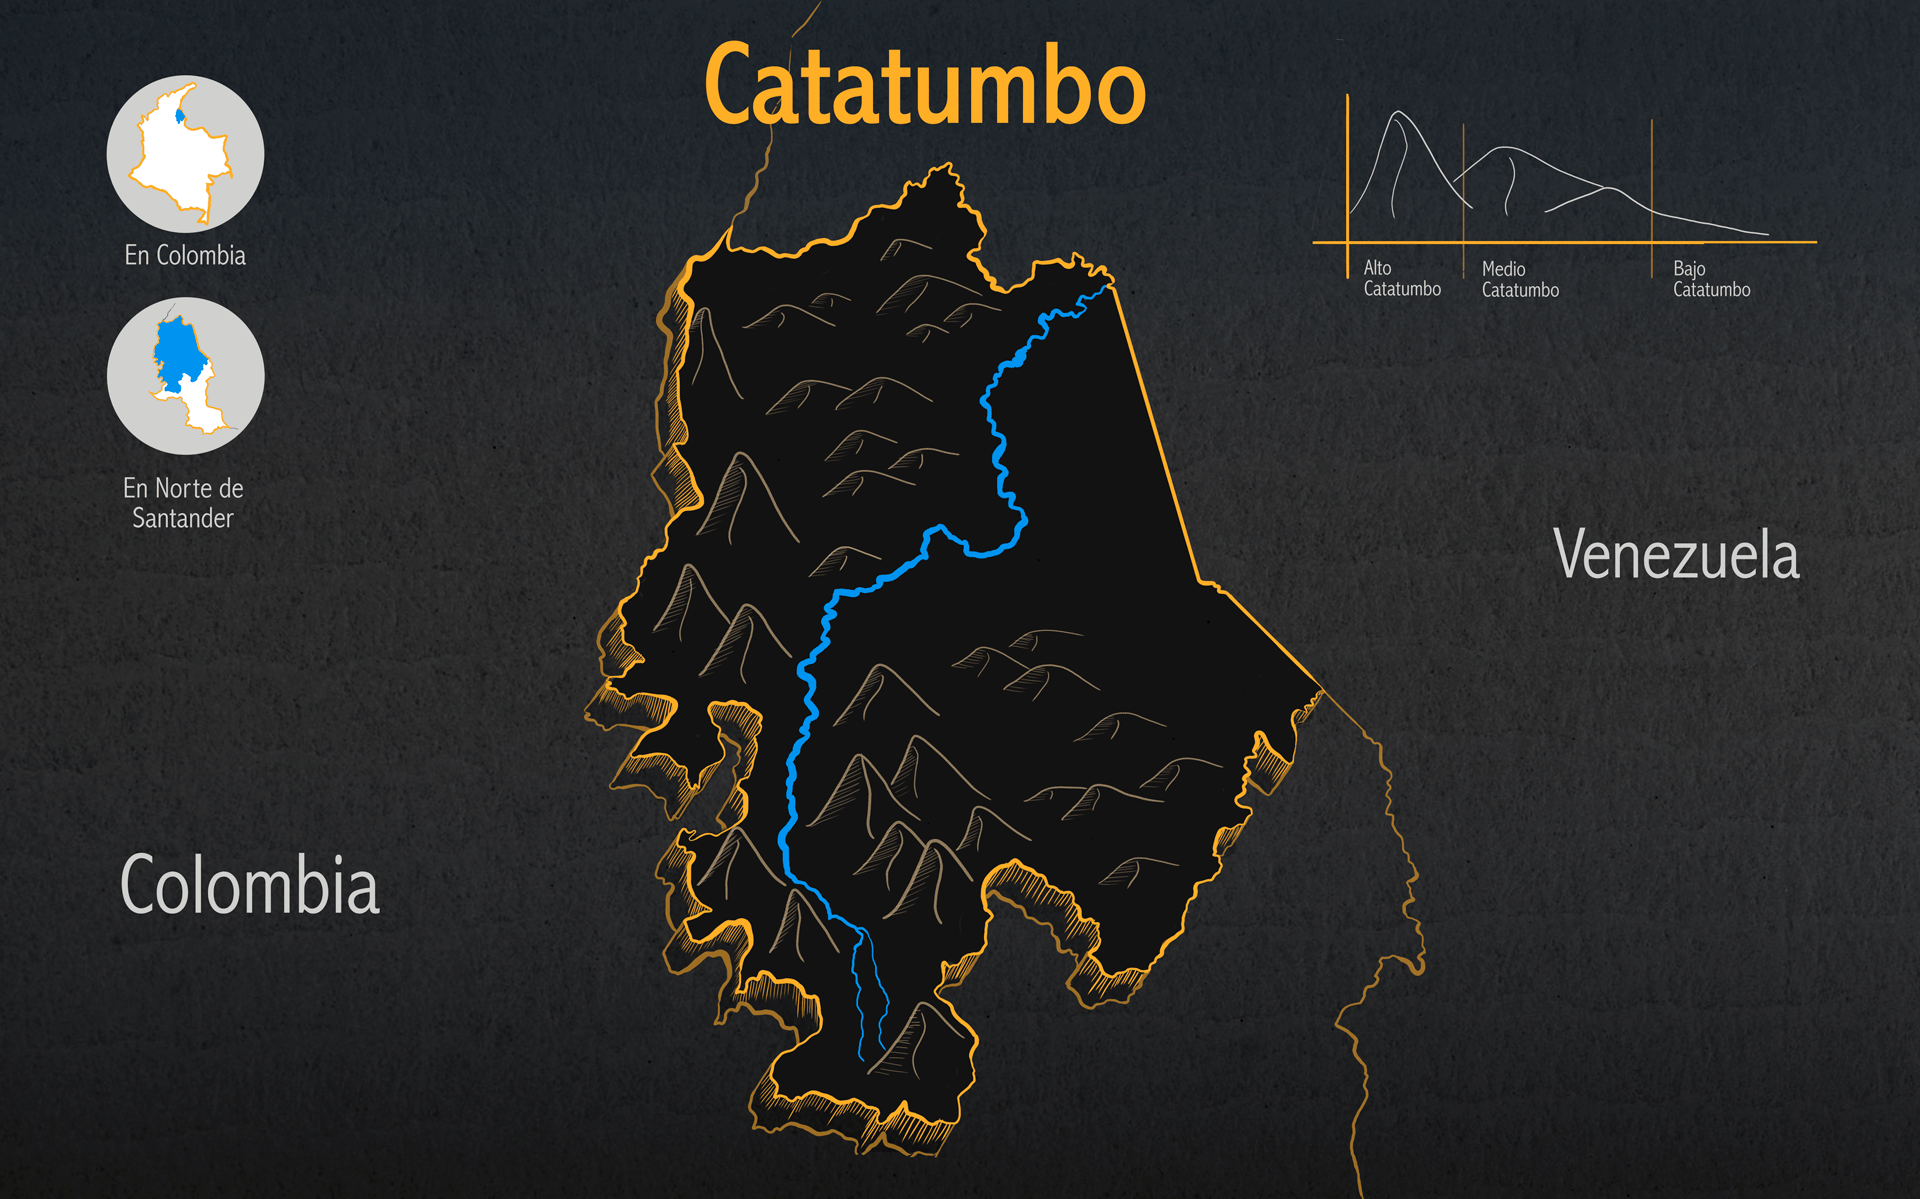 Catatumbo